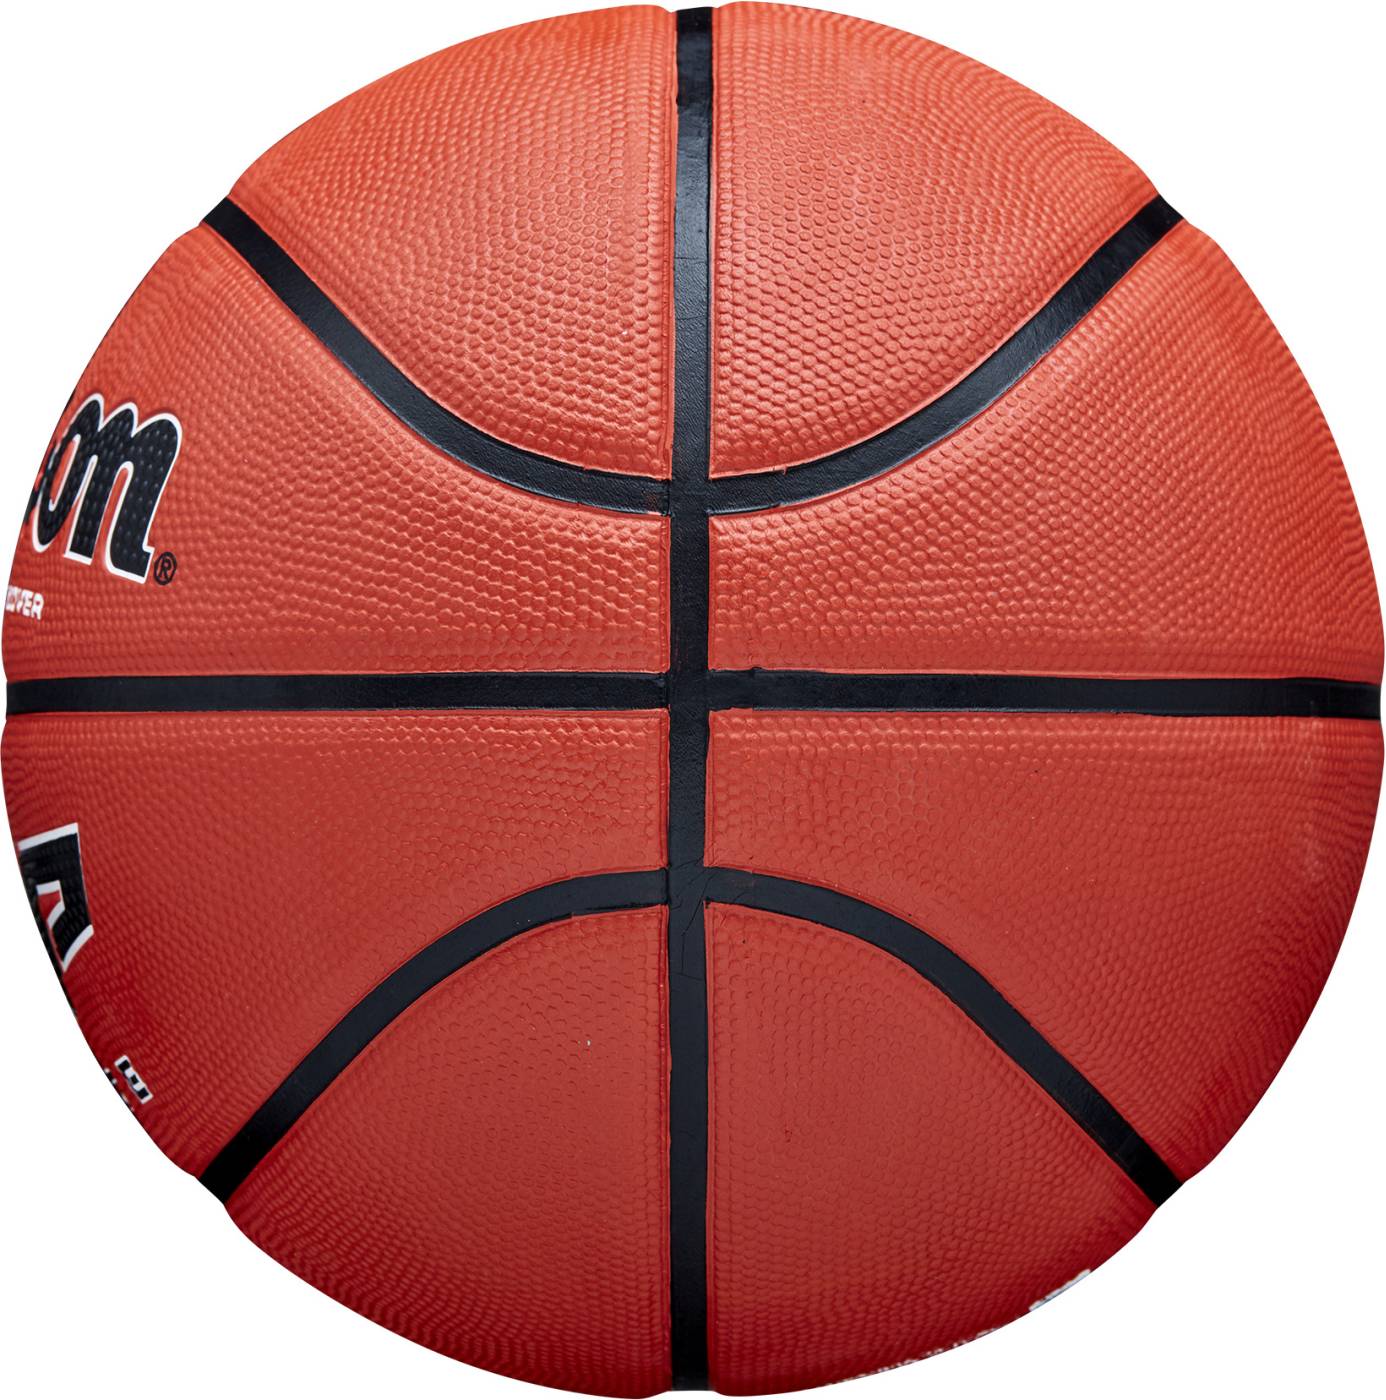 Basketbalová lopta